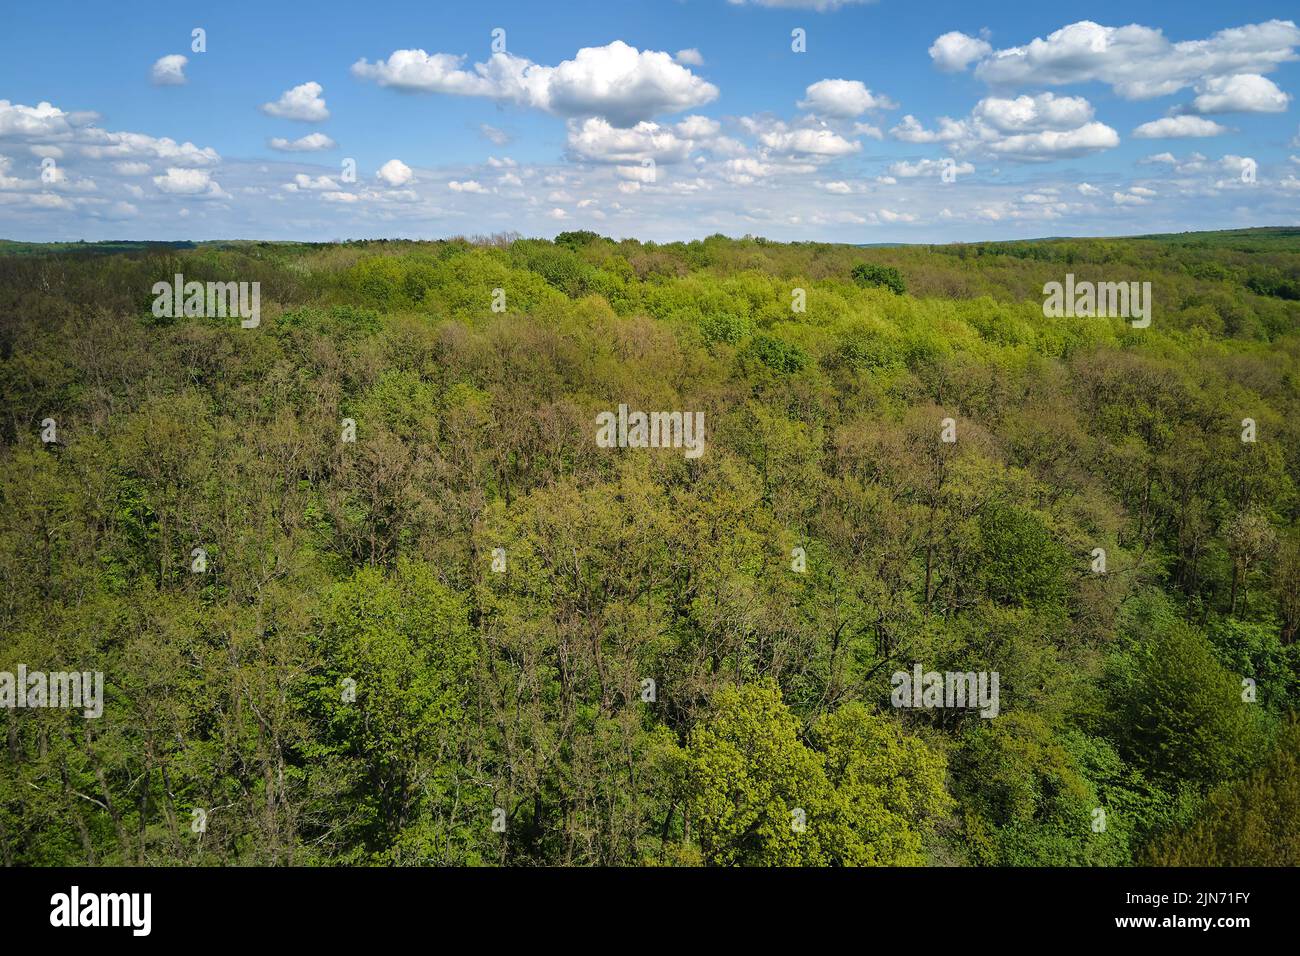 Vue aérienne de la forêt luxuriante et verte sombre avec des canopies d'arbres denses en été Banque D'Images